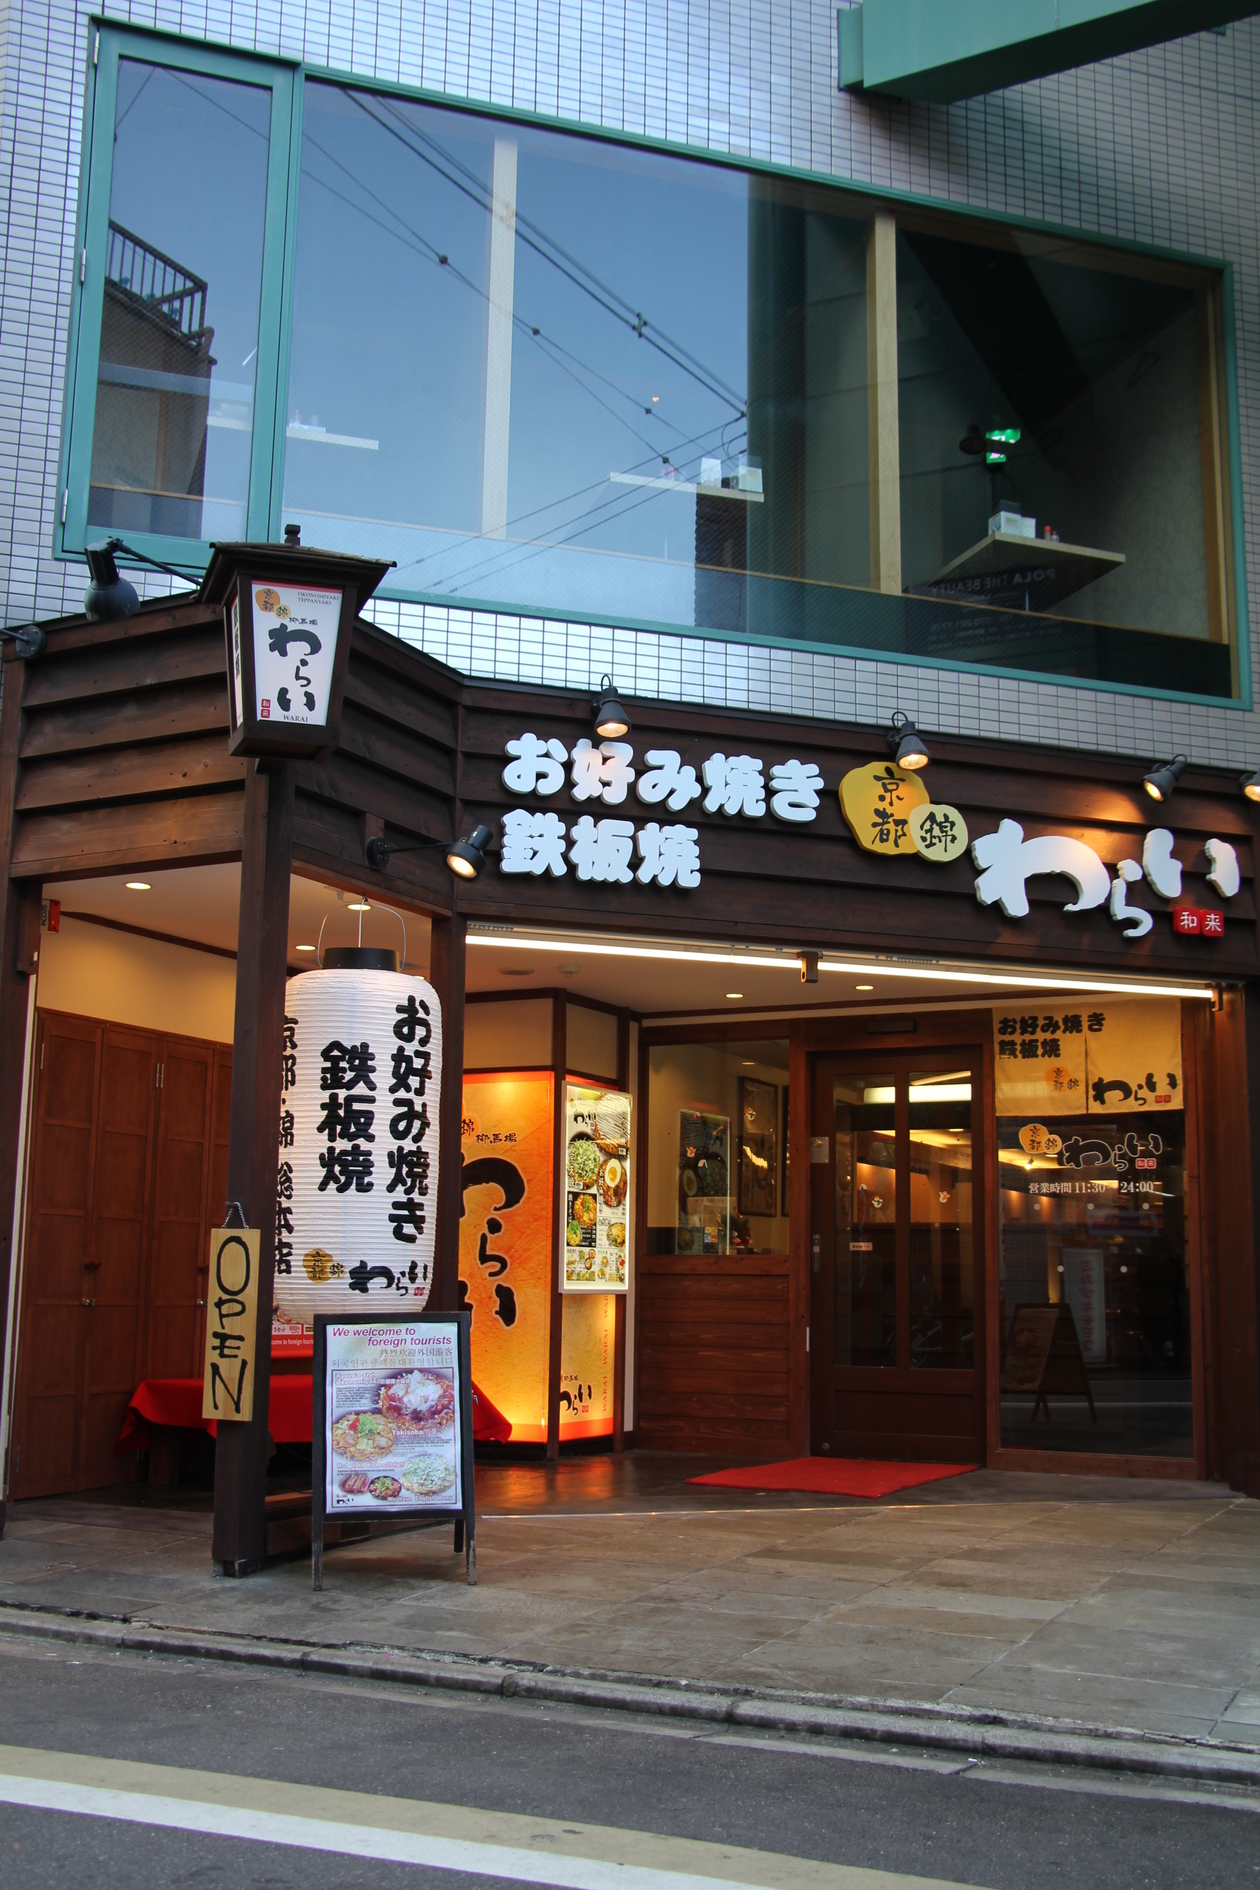 锦warai 锦总店 Eatery Japan